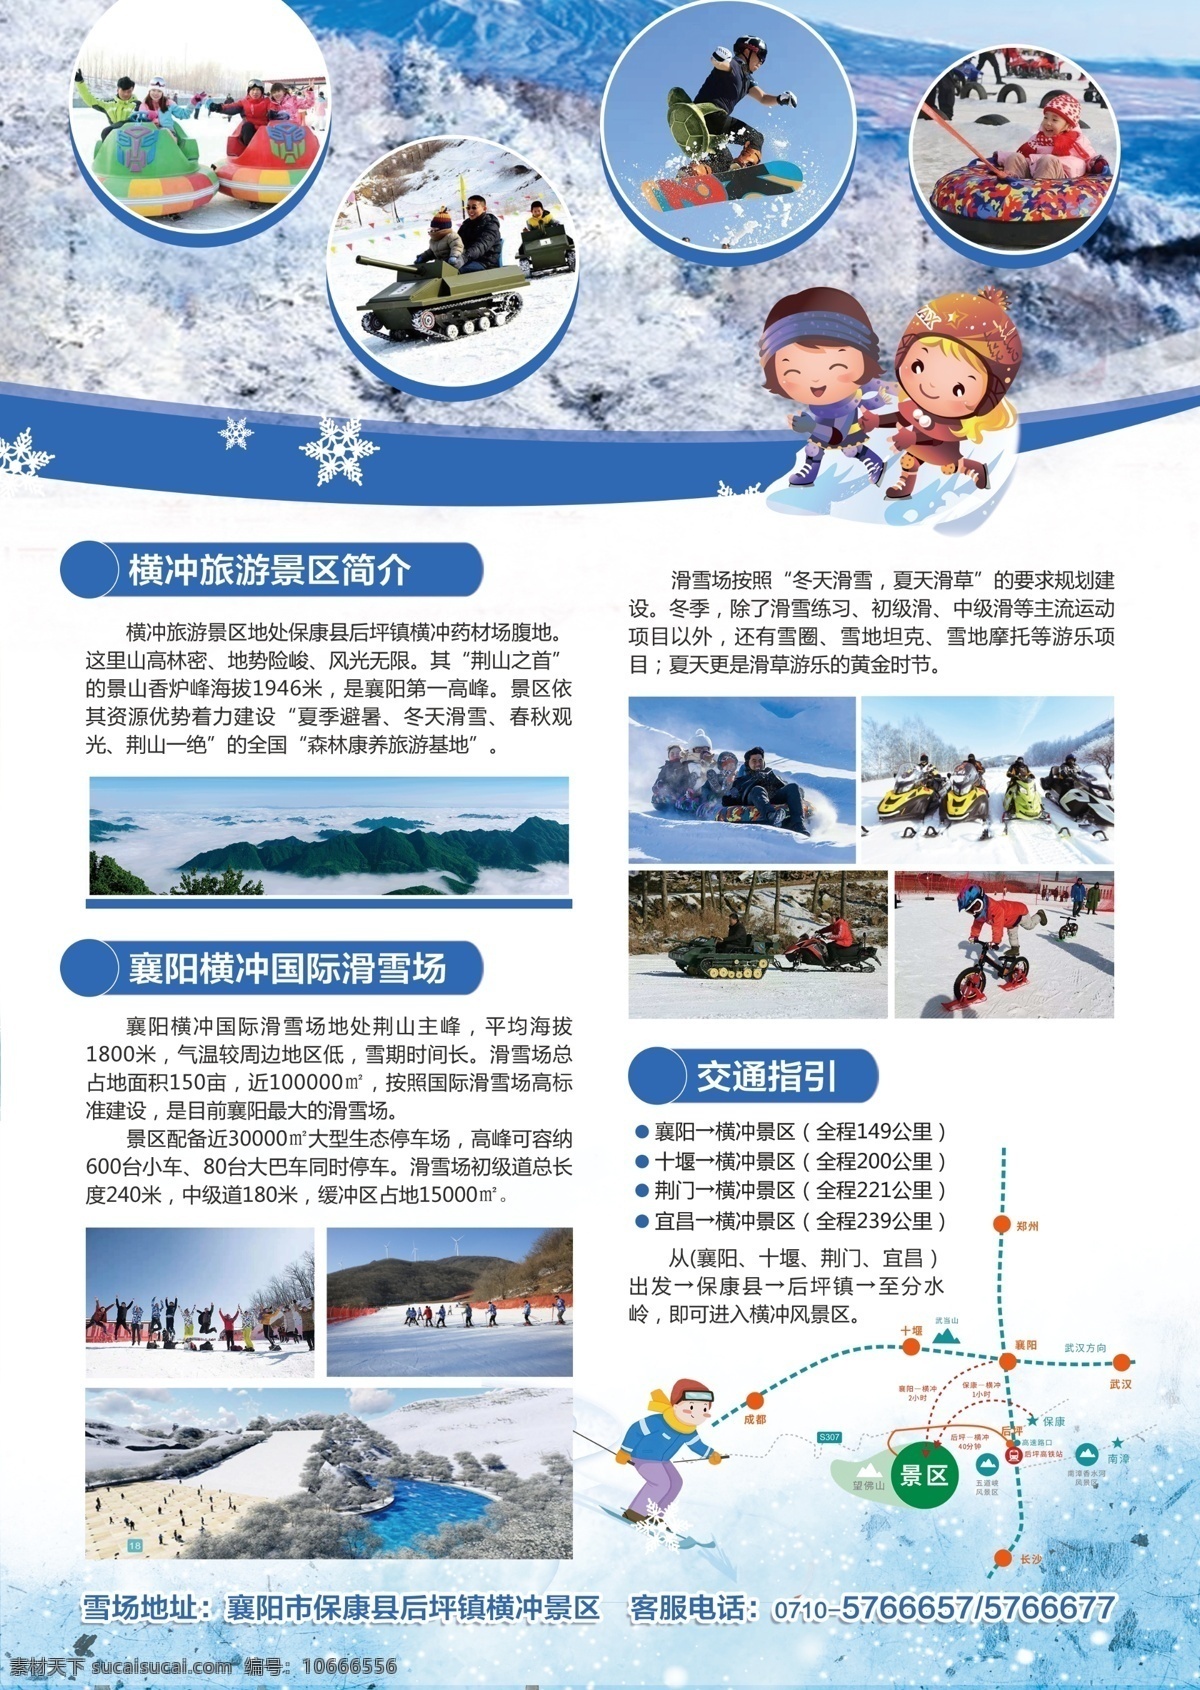 滑雪场宣传单 宣传单 滑雪场 景区 dm单 滑雪 儿童版宣传单 杂活 dm宣传单